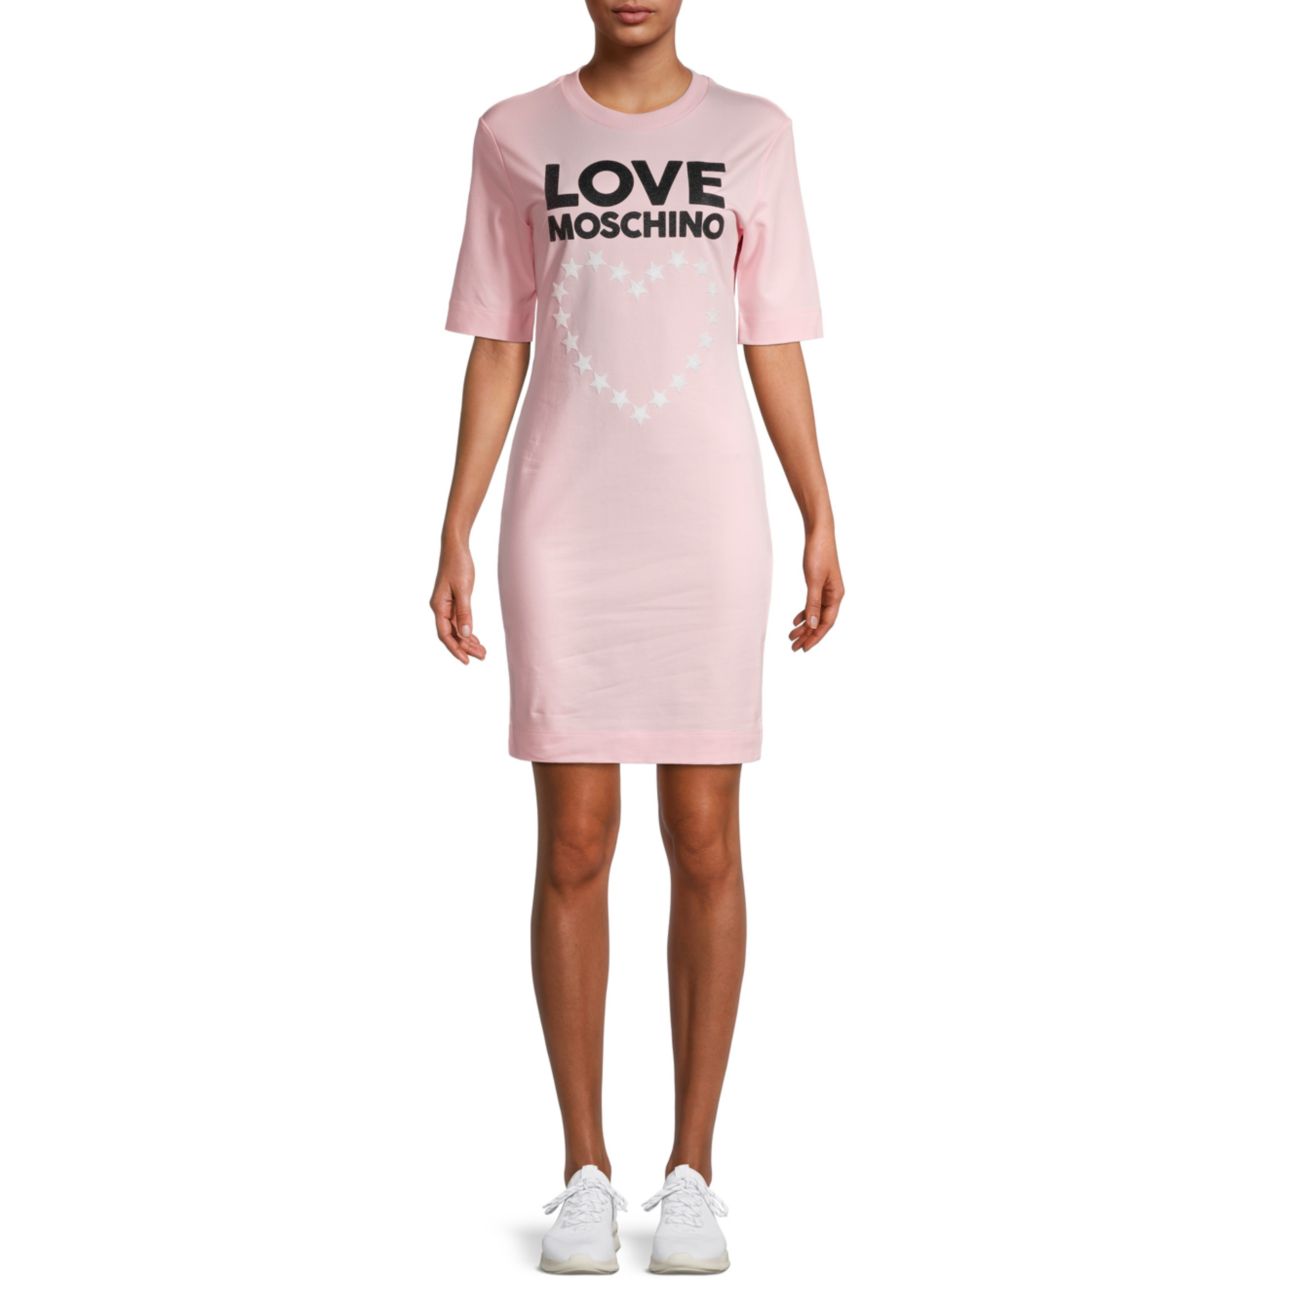 Звездочка & amp; Платье-футболка с логотипом Heart LOVE Moschino